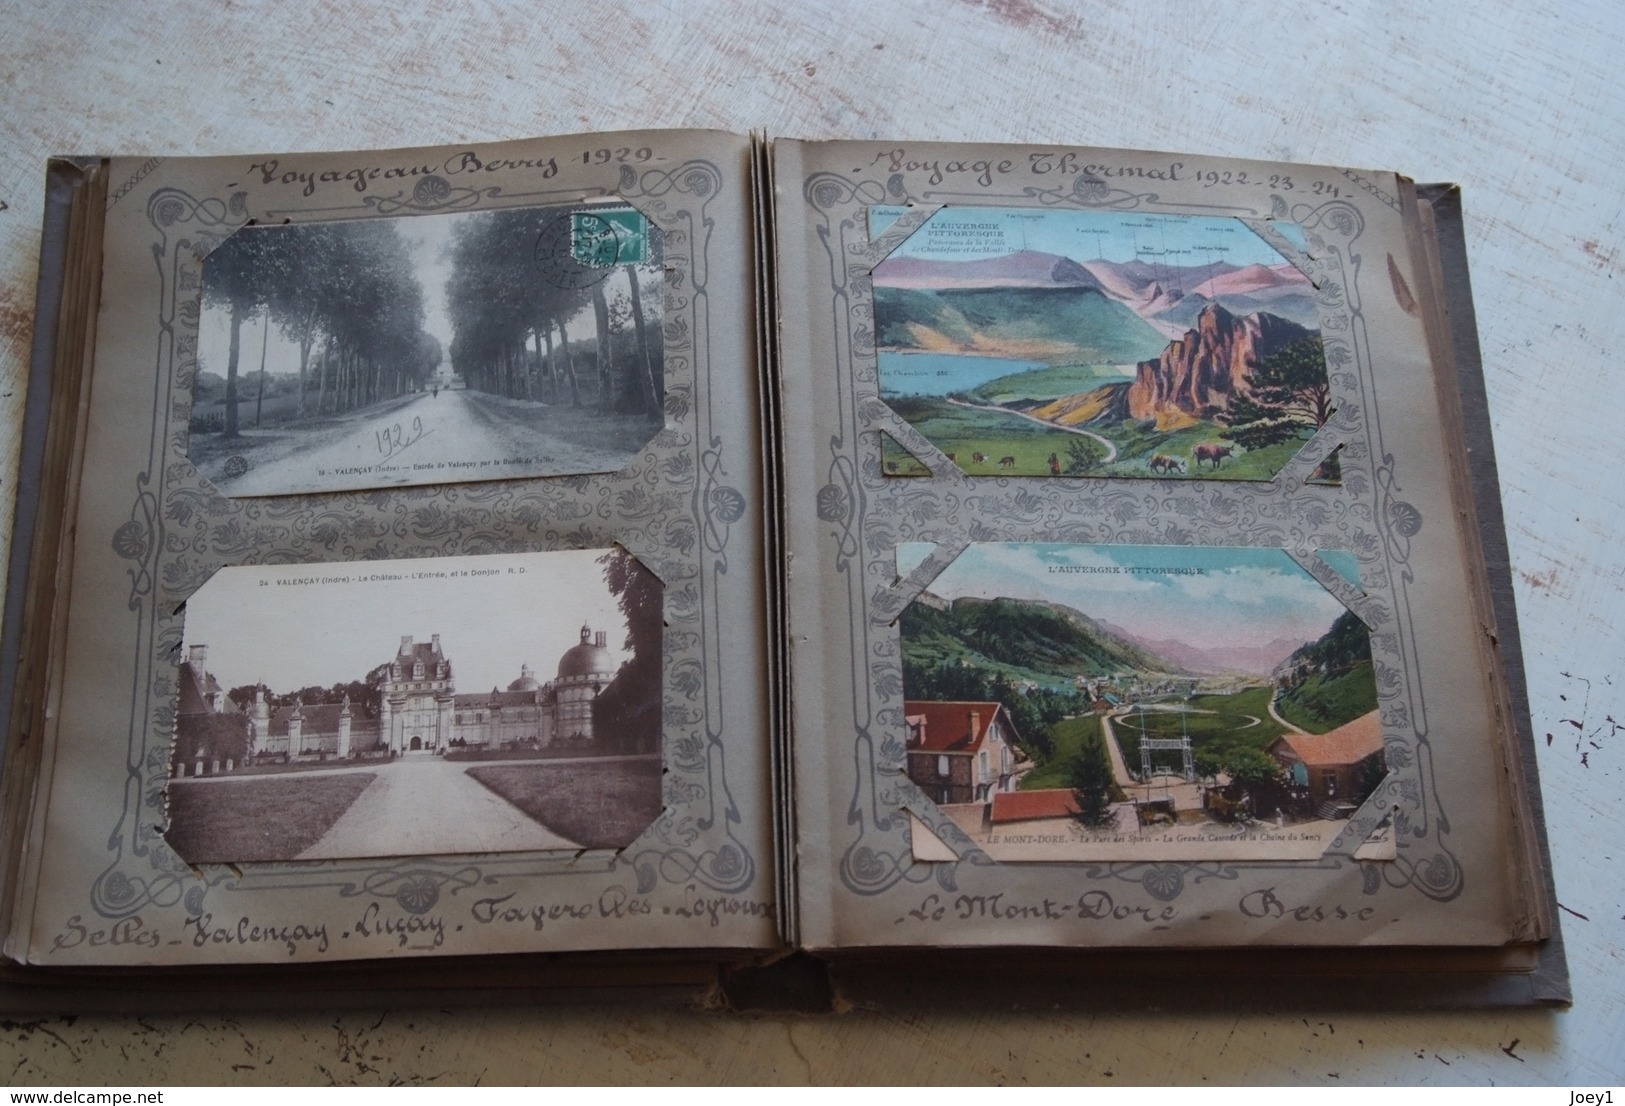 Album cartes postales 166 cartes de différentes régions française,essentiellement Bretagne.